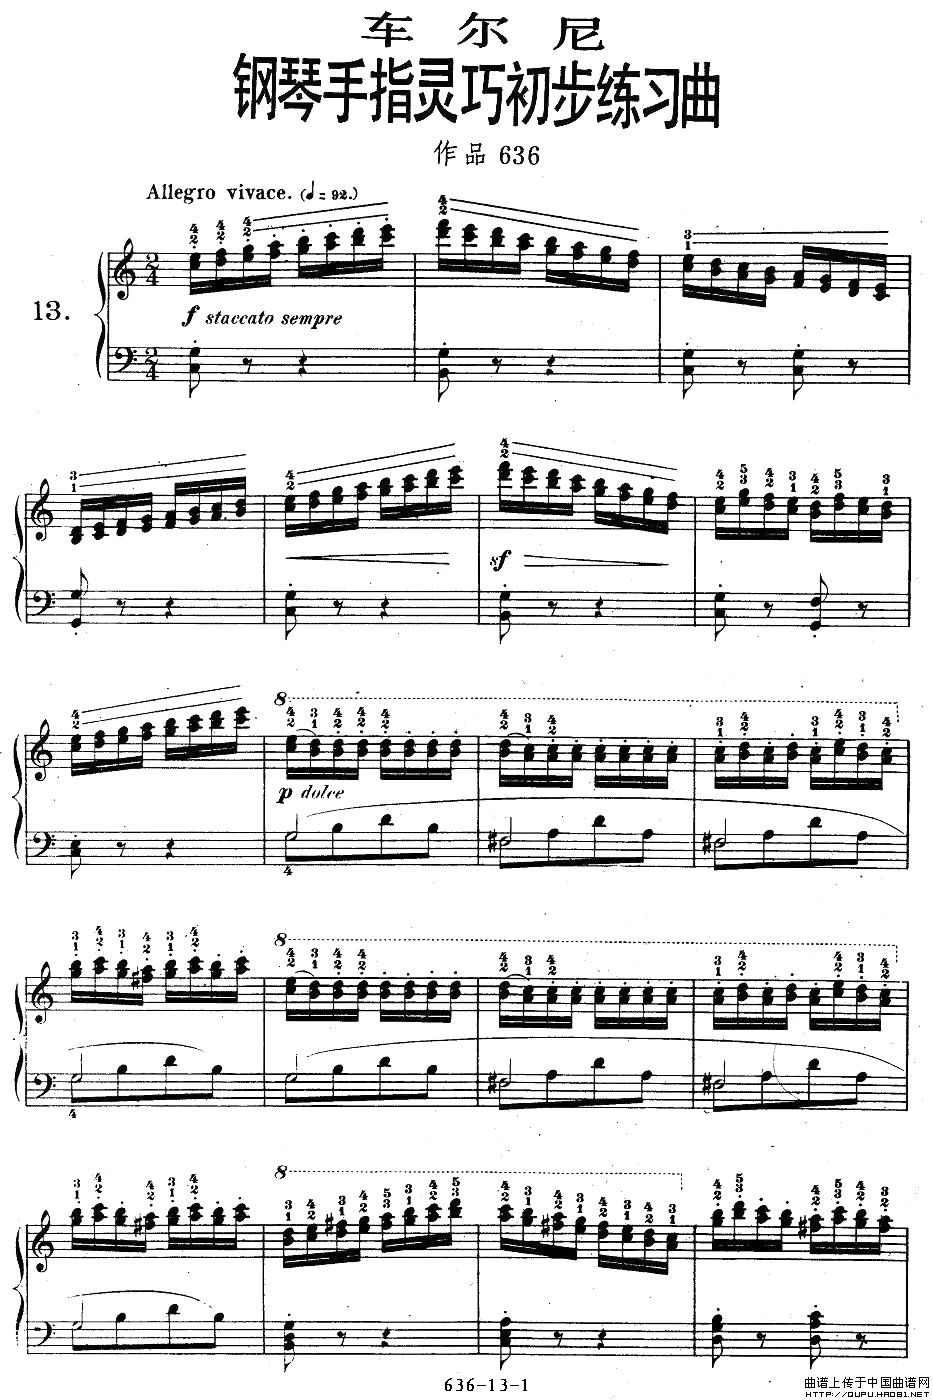 车尔尼钢琴手指灵巧初步练习曲OP.636-13